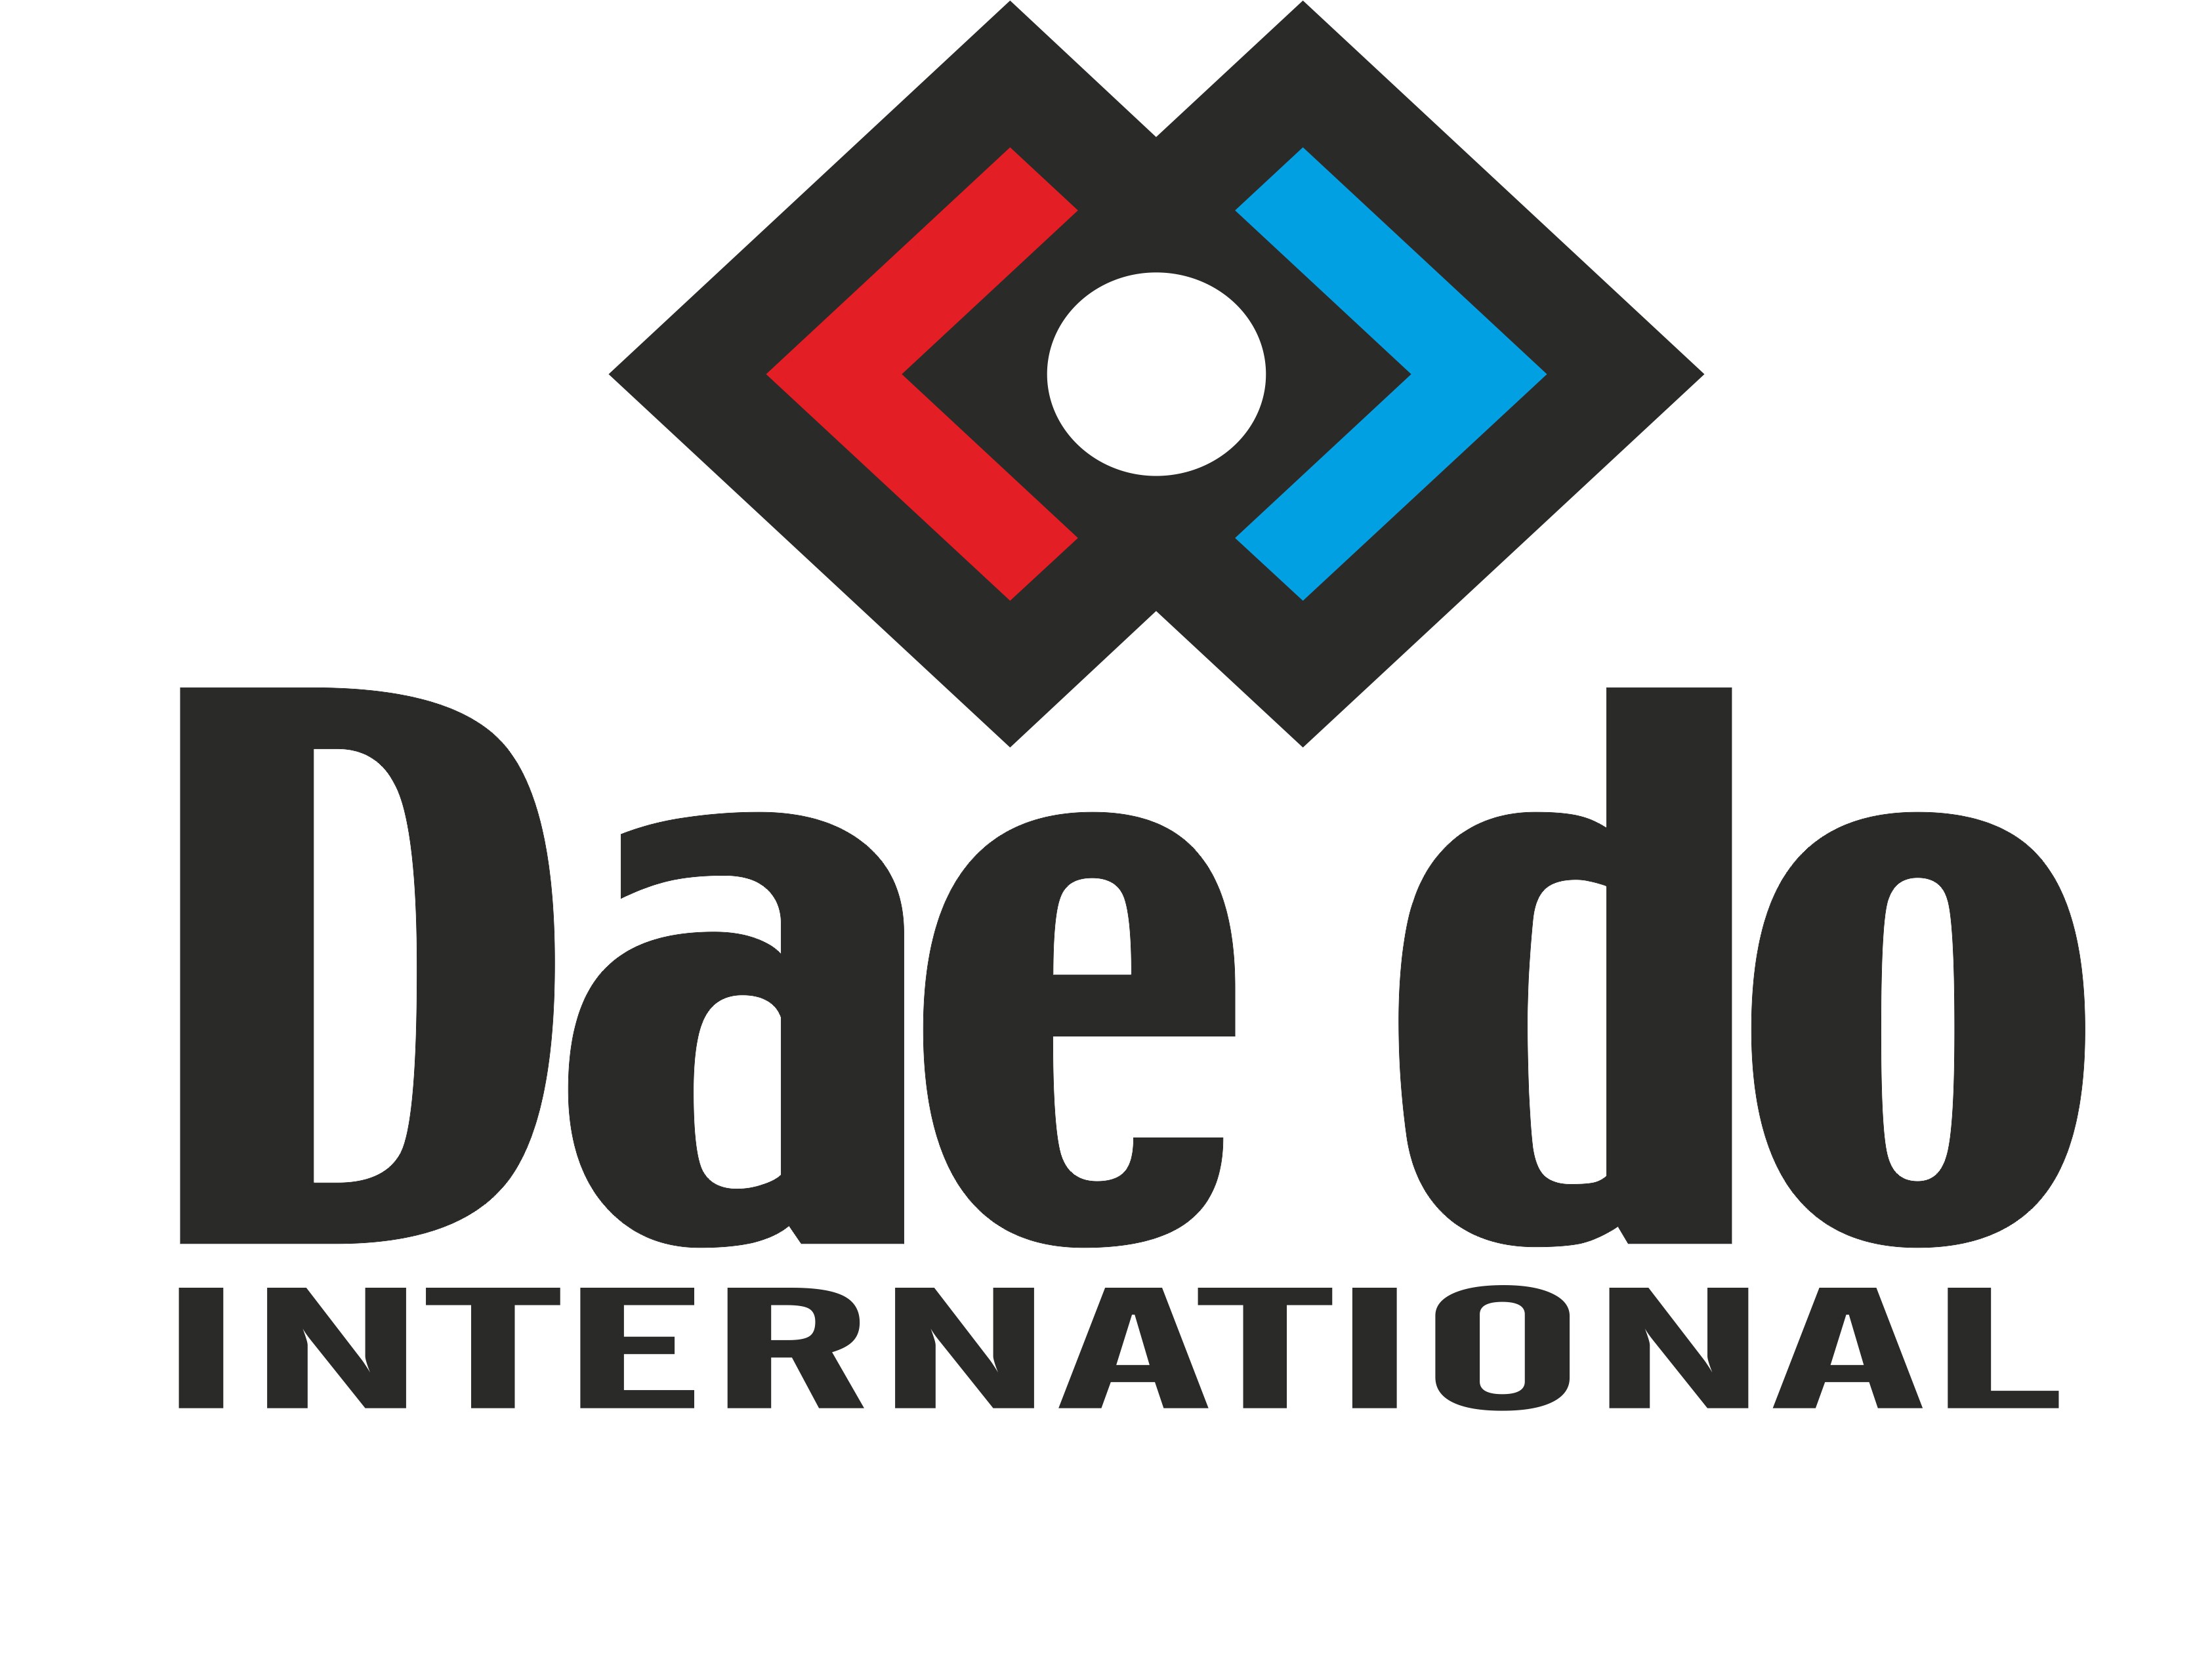 DAE-DO